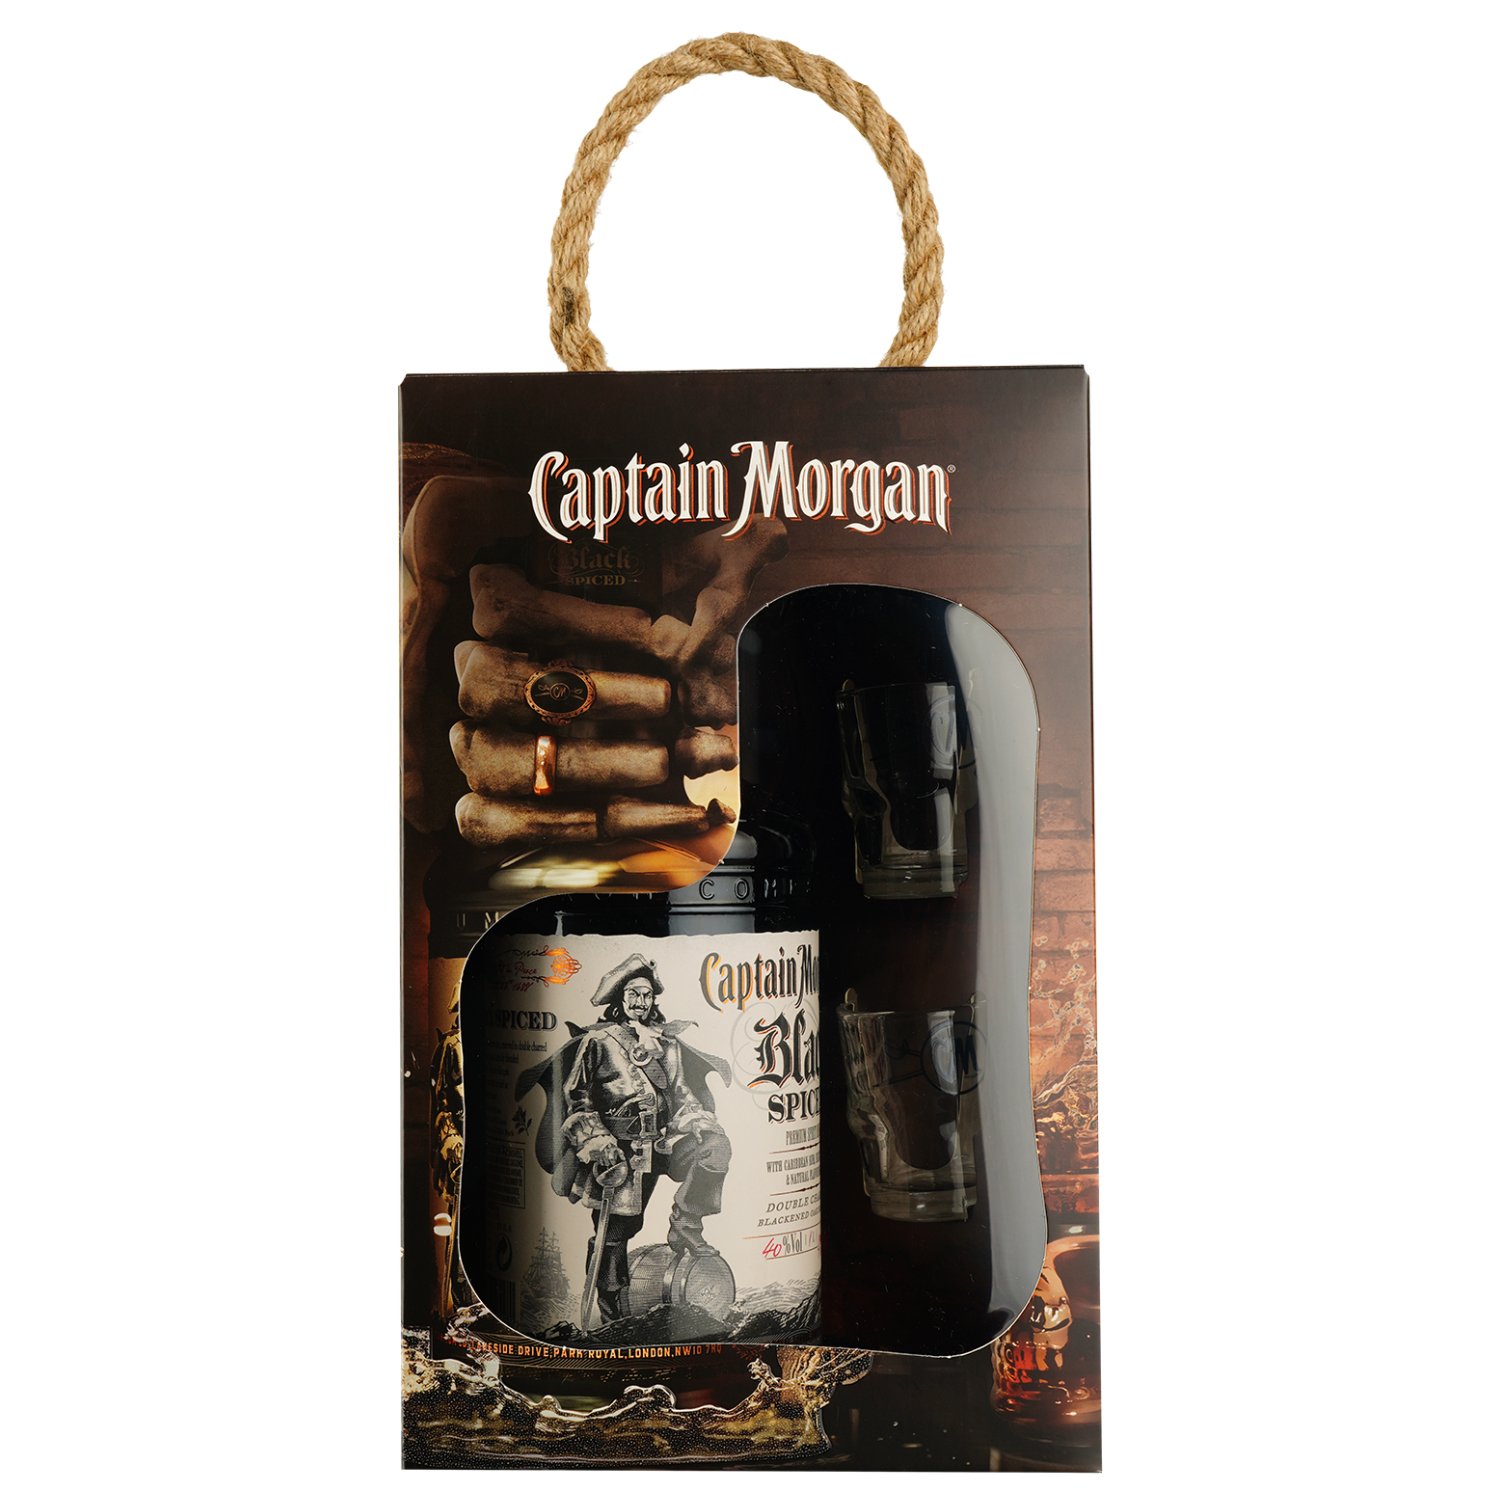 Ромовий напій Captain Morgan Black Spiced, 40%, 1 л + 2 чарки - фото 1